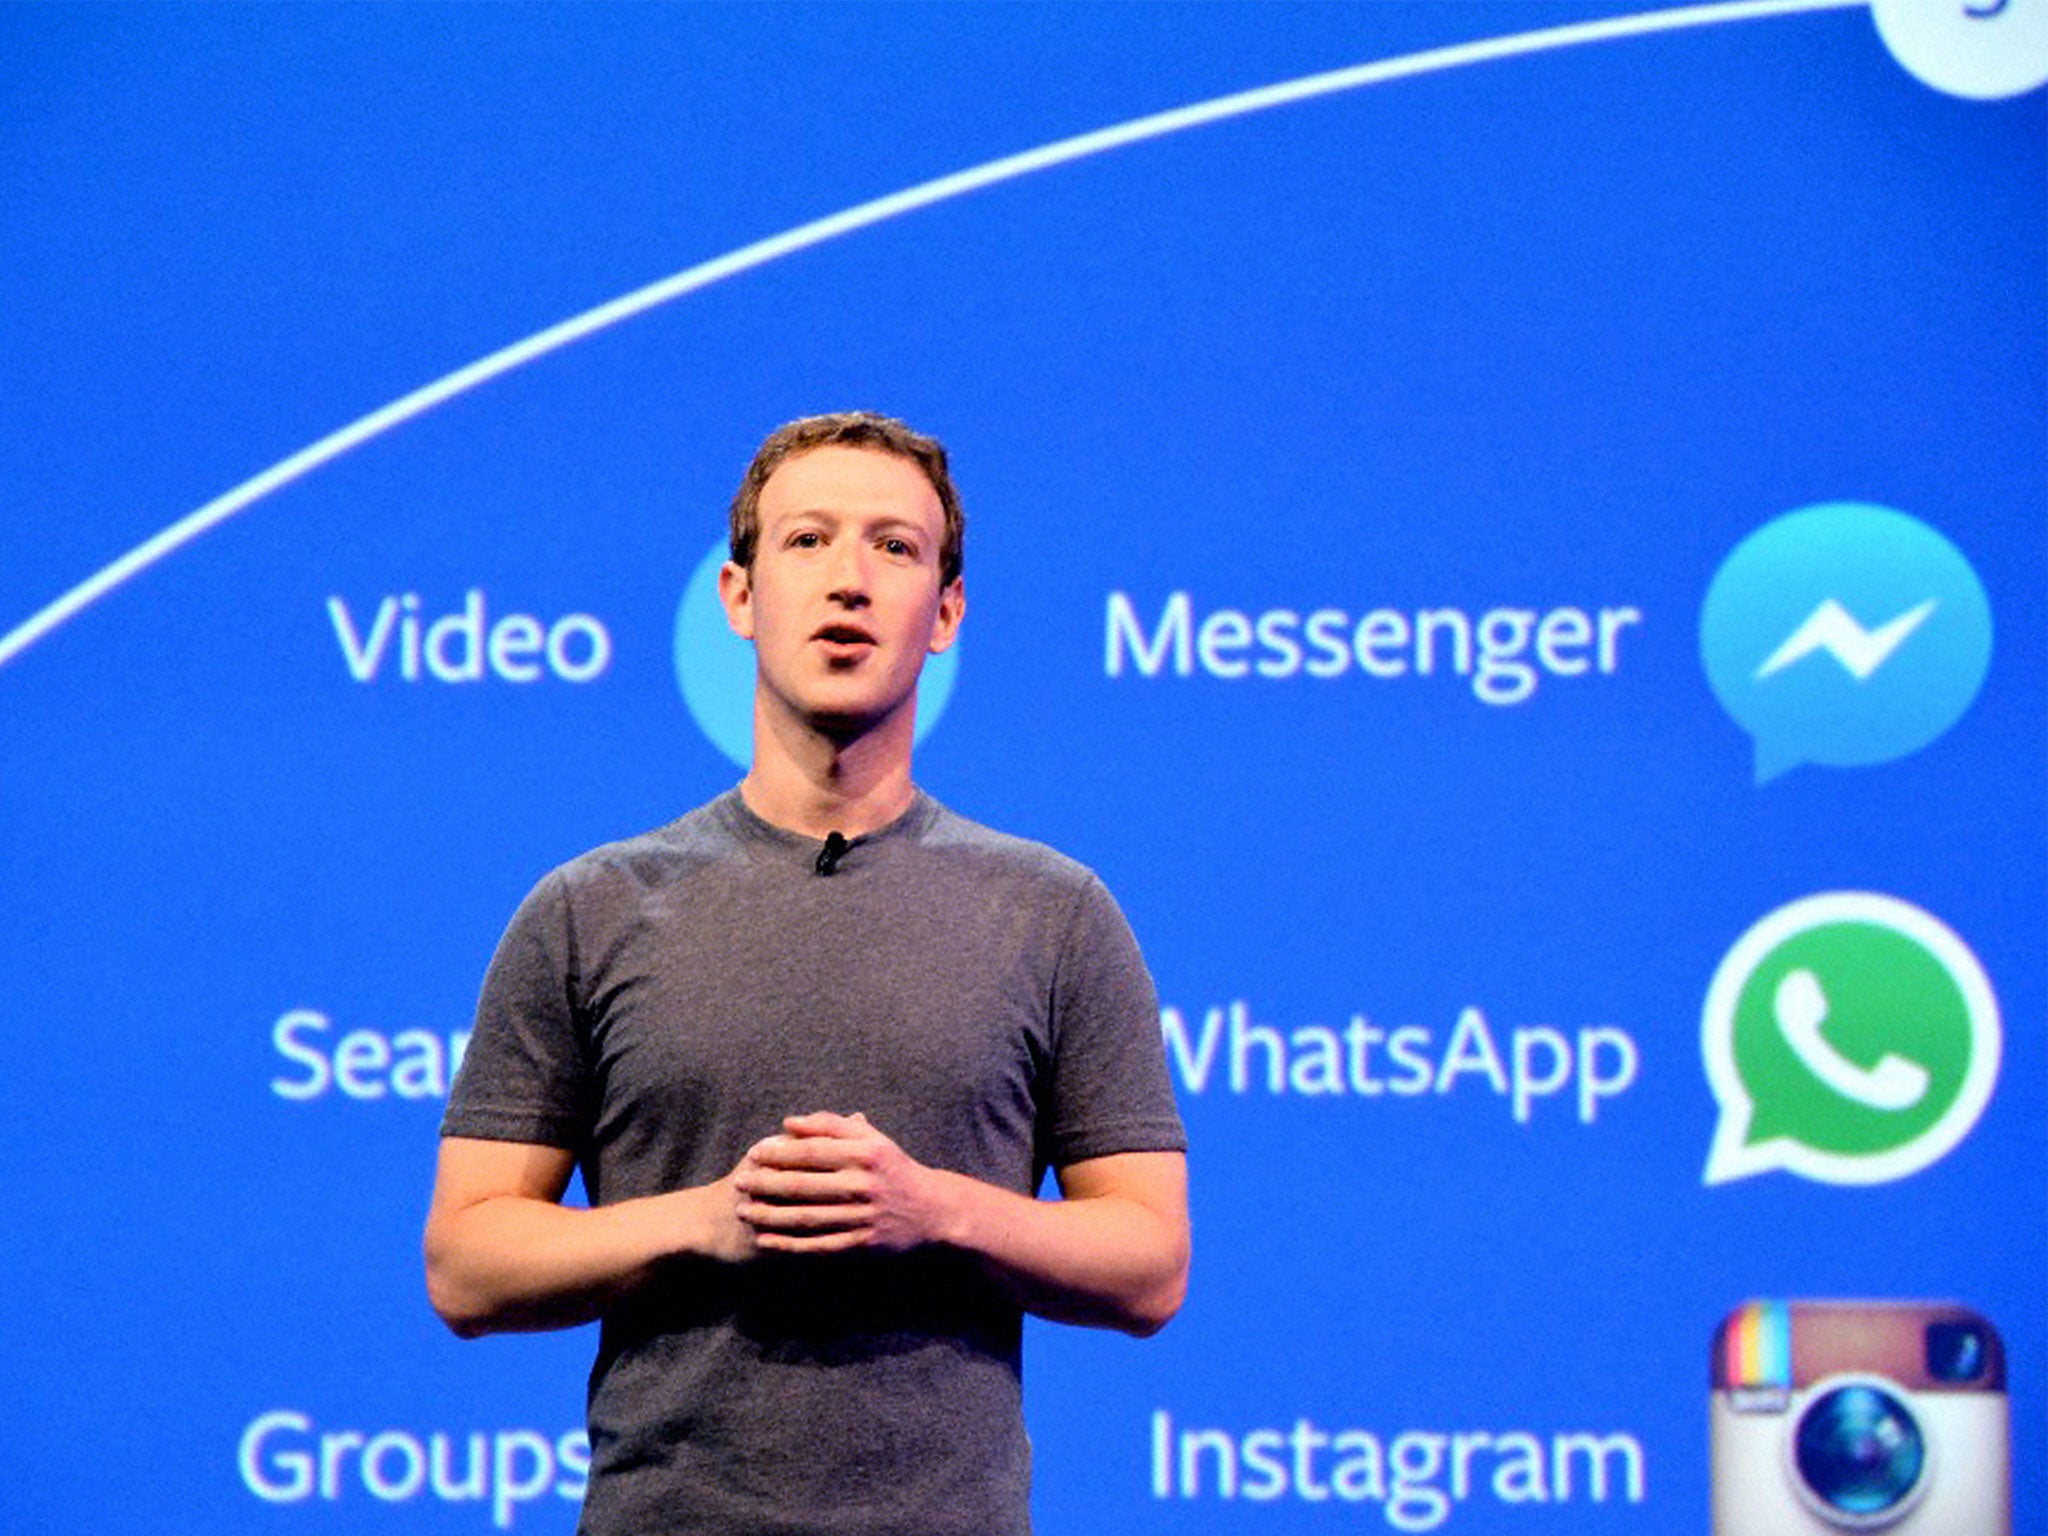 Facebook founder Mark Zuckerberg bought over Instagram in 2012 for $1.5bn